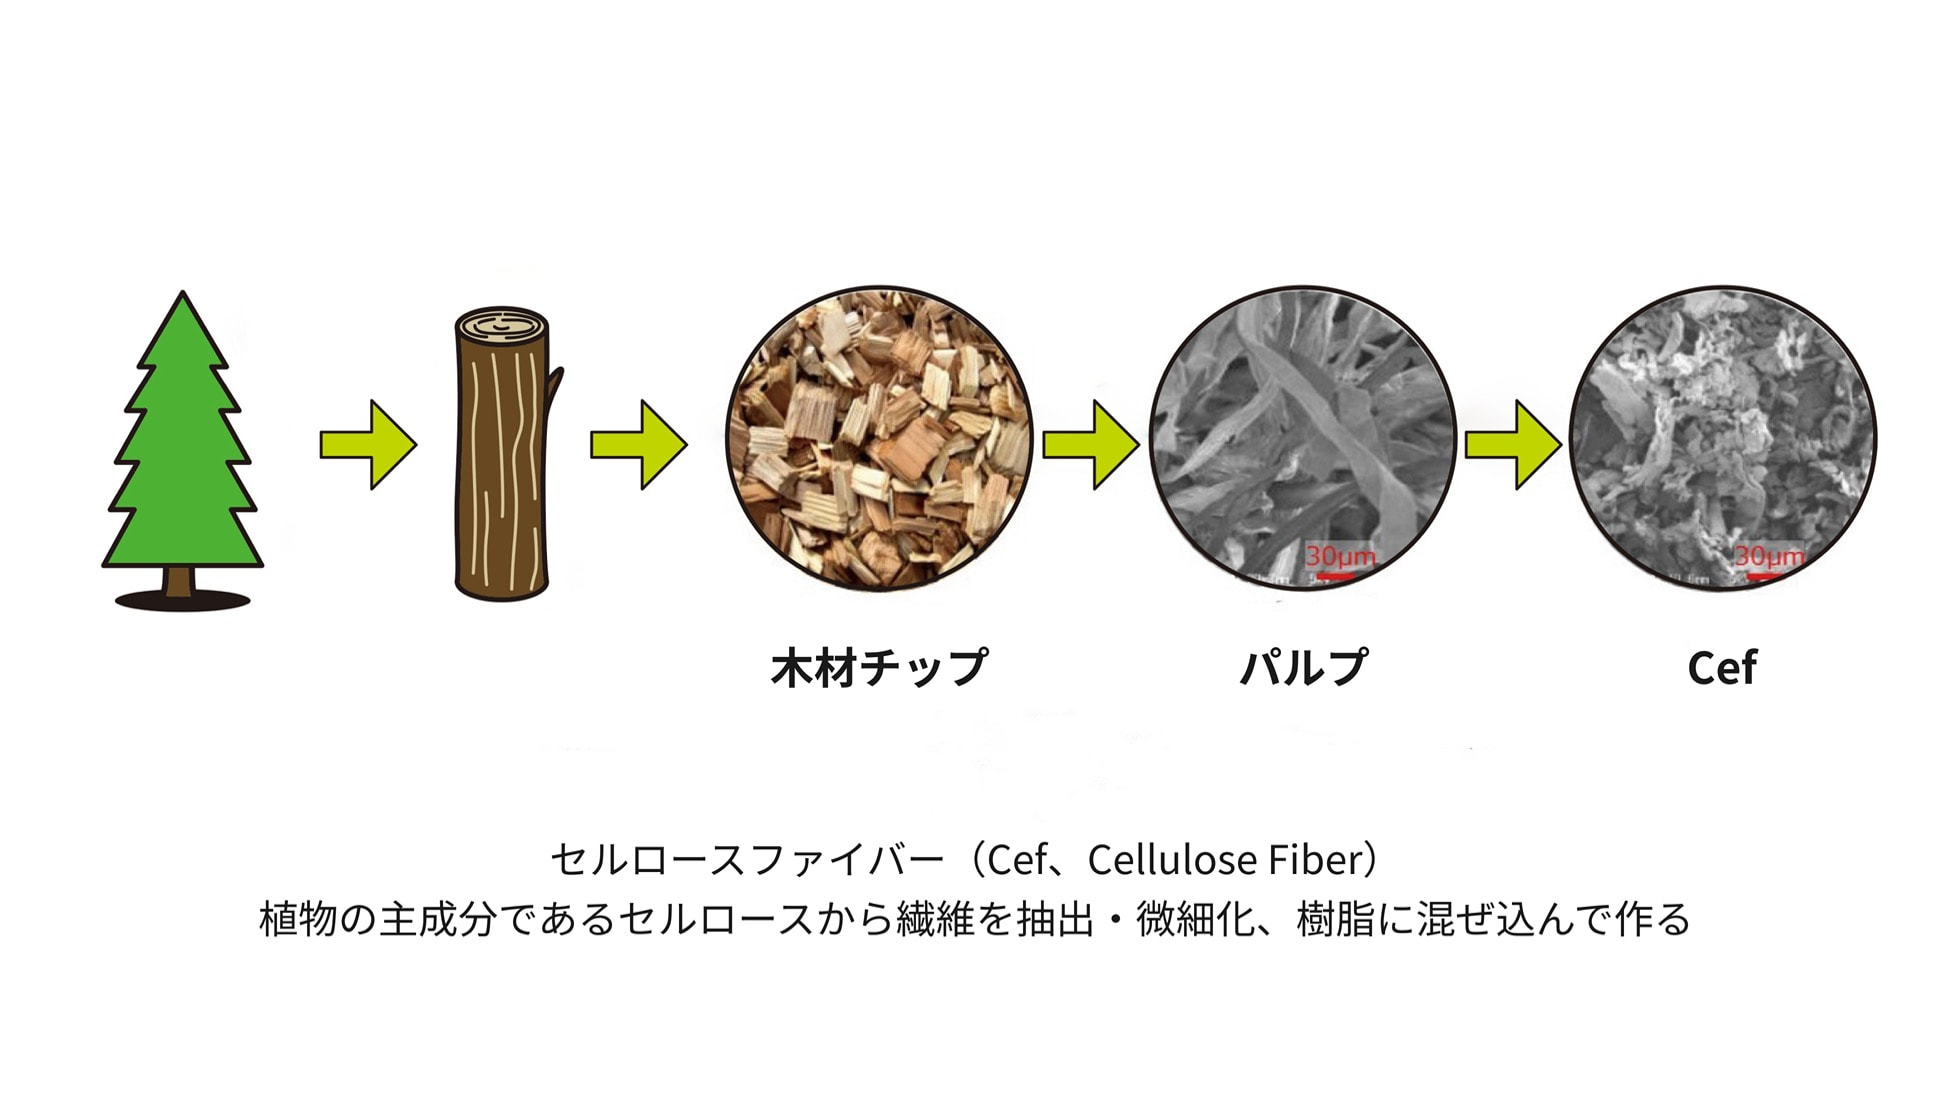 木材チップ パルプ Cef セルロースファイバー（Cef、Cellulose Fiber）植物の主成分であるセルロースから遷移を抽出・微細化、樹脂に混ぜ込んで作る